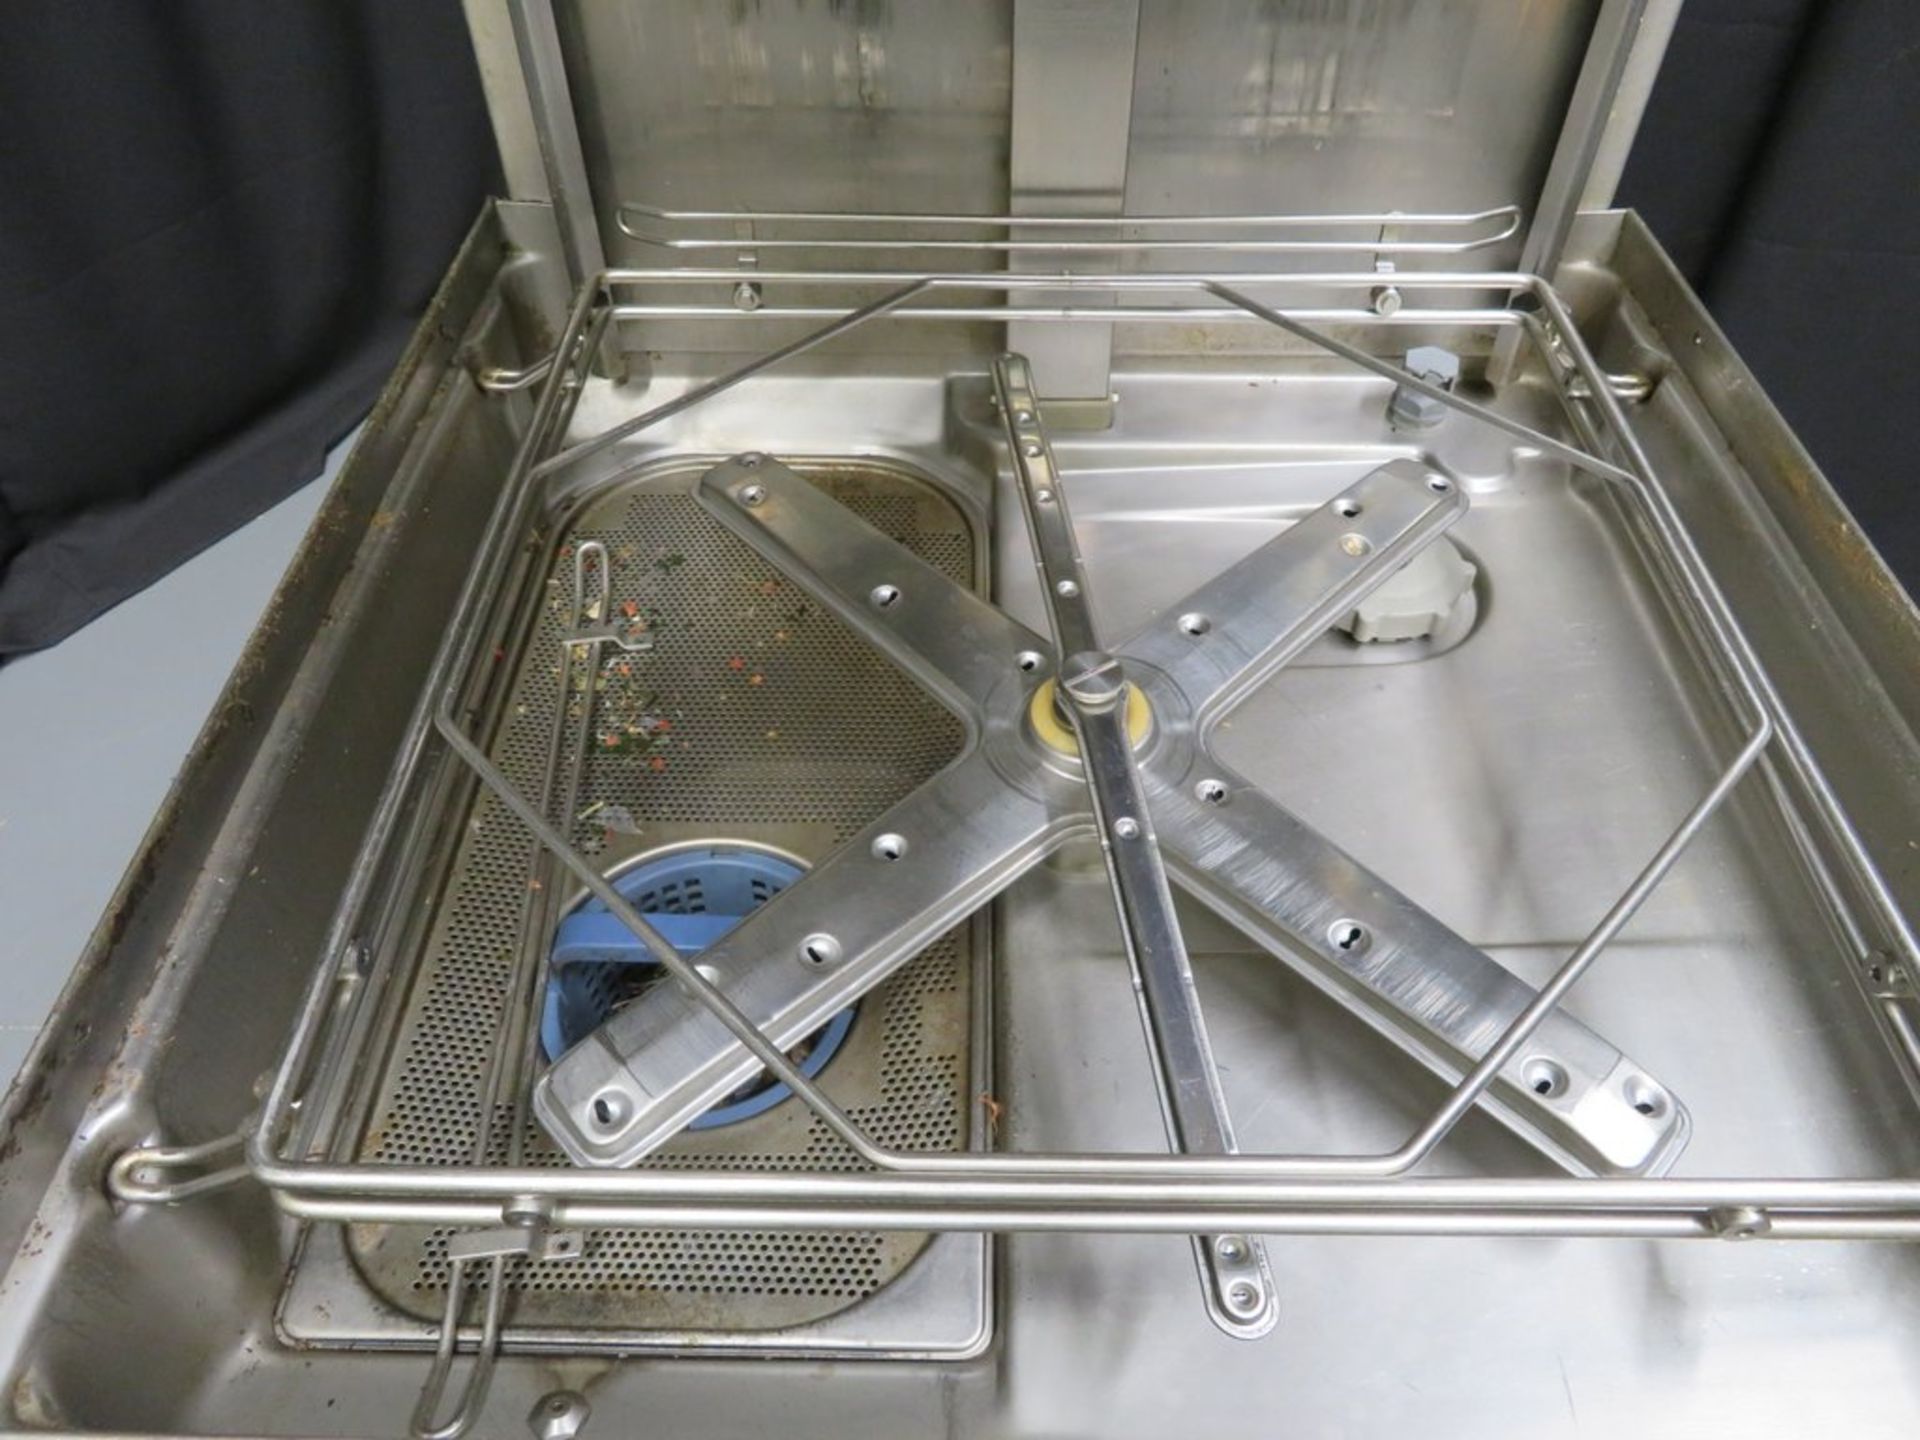 Hobart AMX passthrough dishwasher, 3 phase electric - Bild 6 aus 8